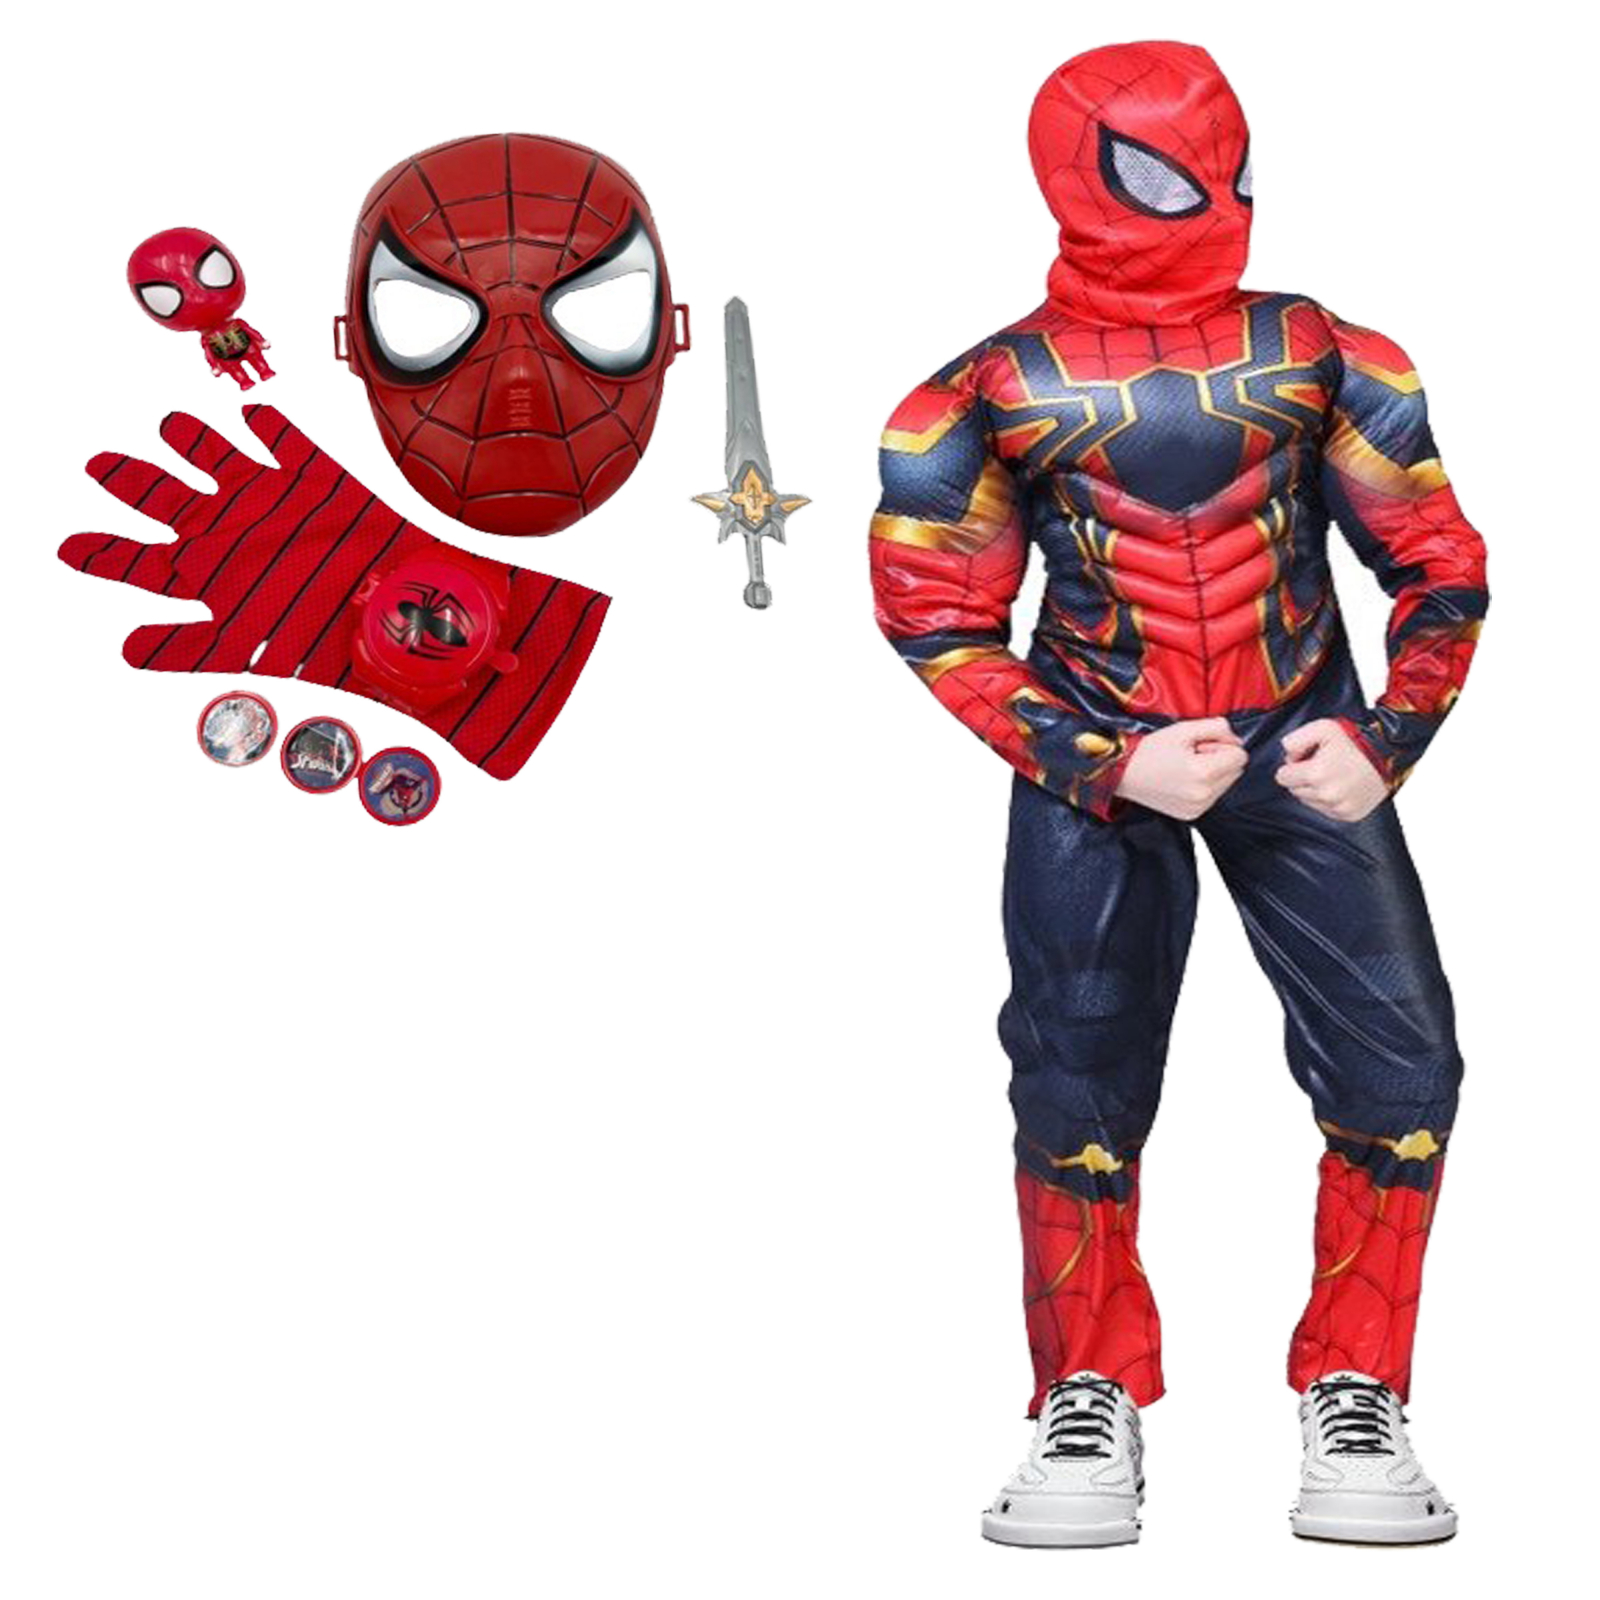 Set costum Iron Spiderman cu manusa si accesorii pentru baieti 5-7 ani 110-120 cm